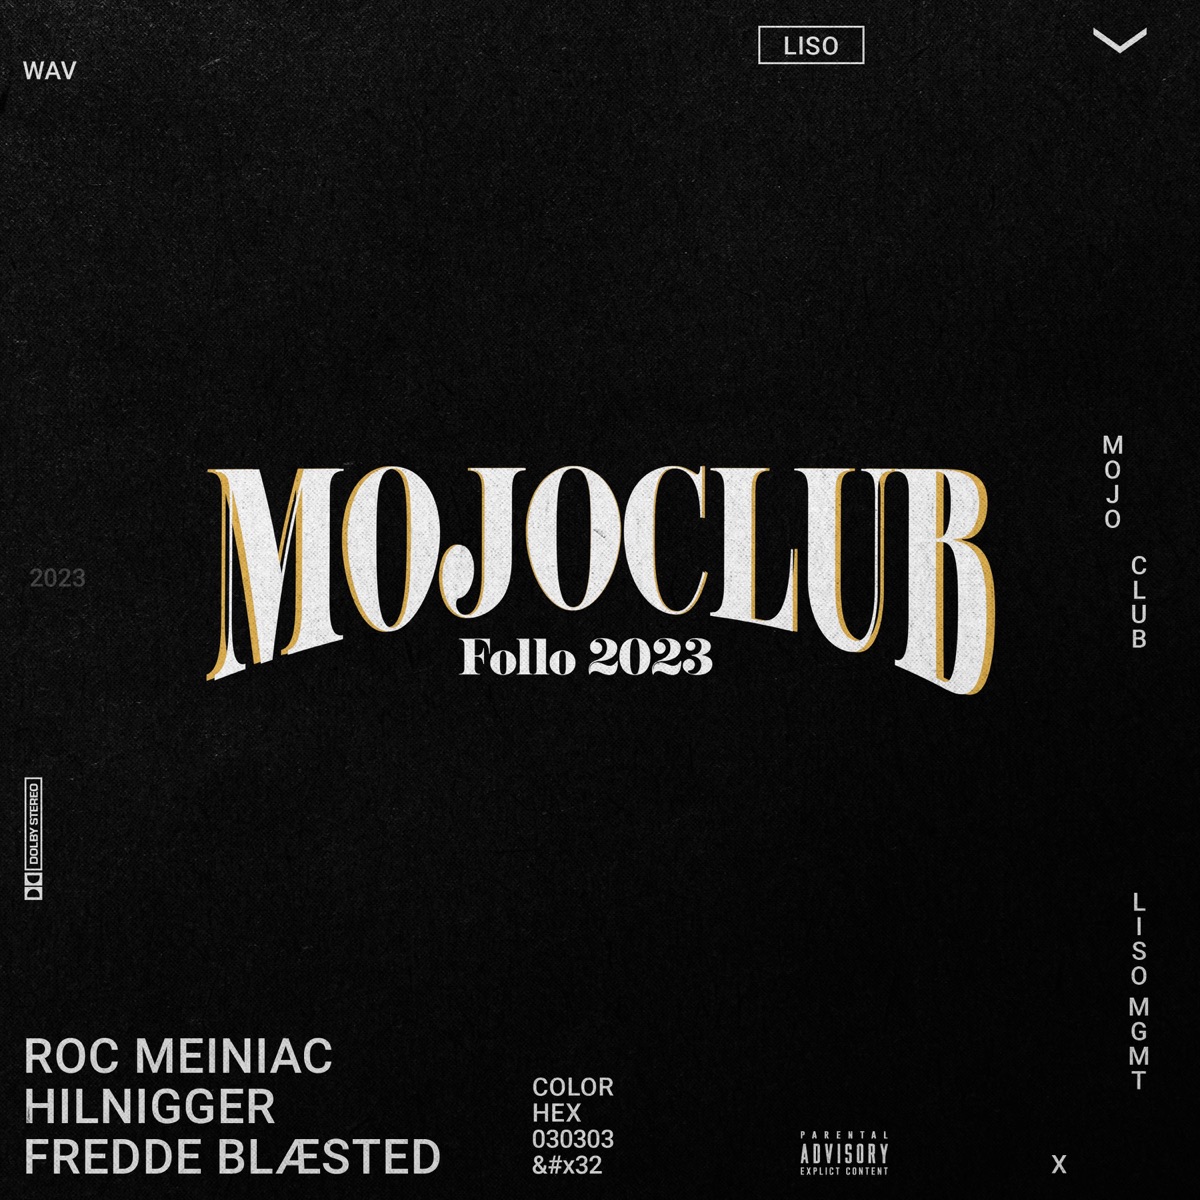 MOJO Club